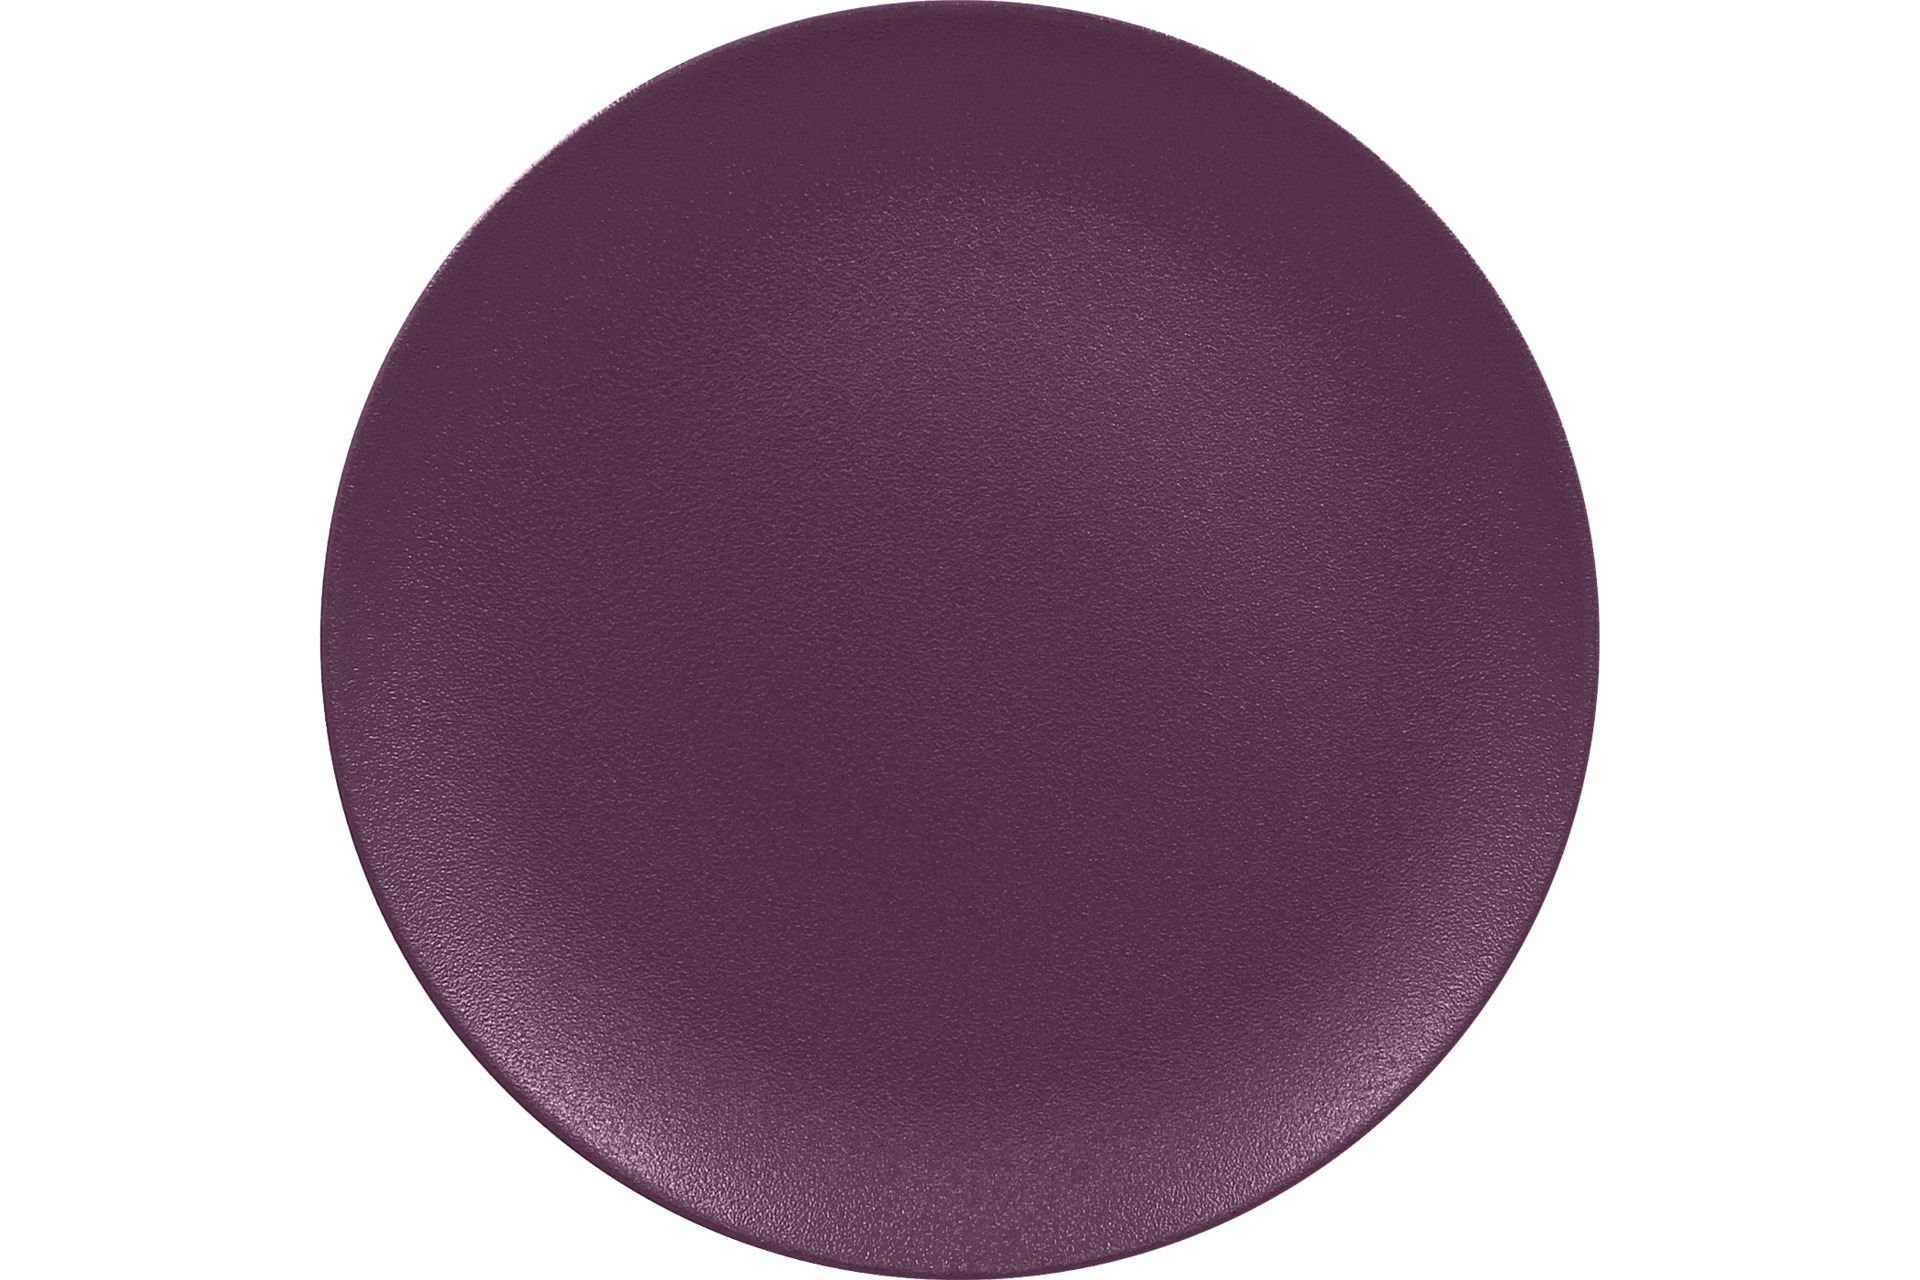 Coupteller flach 240 mm plum-purple